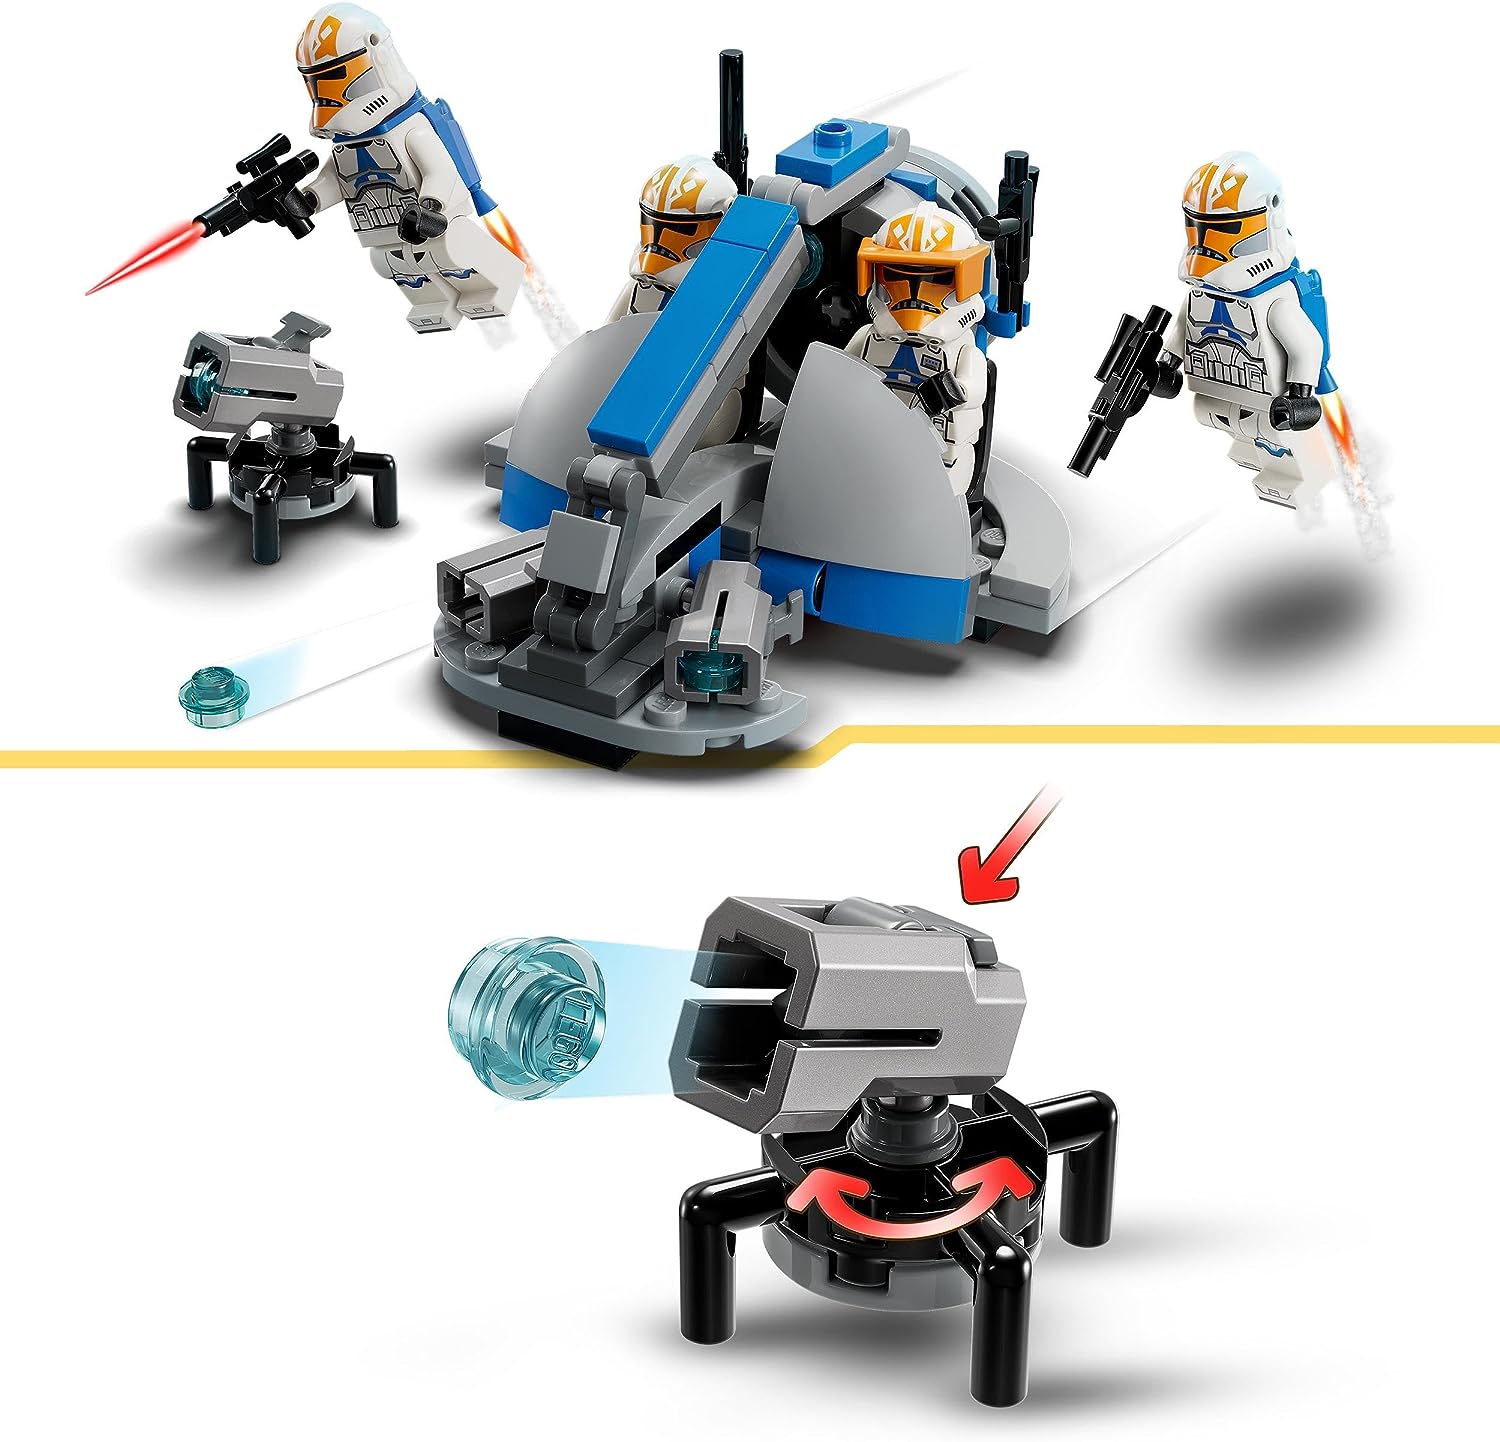 Lego 75359 - Star Wars 332nd Ahsoka's Clone Trooper Battle Pack